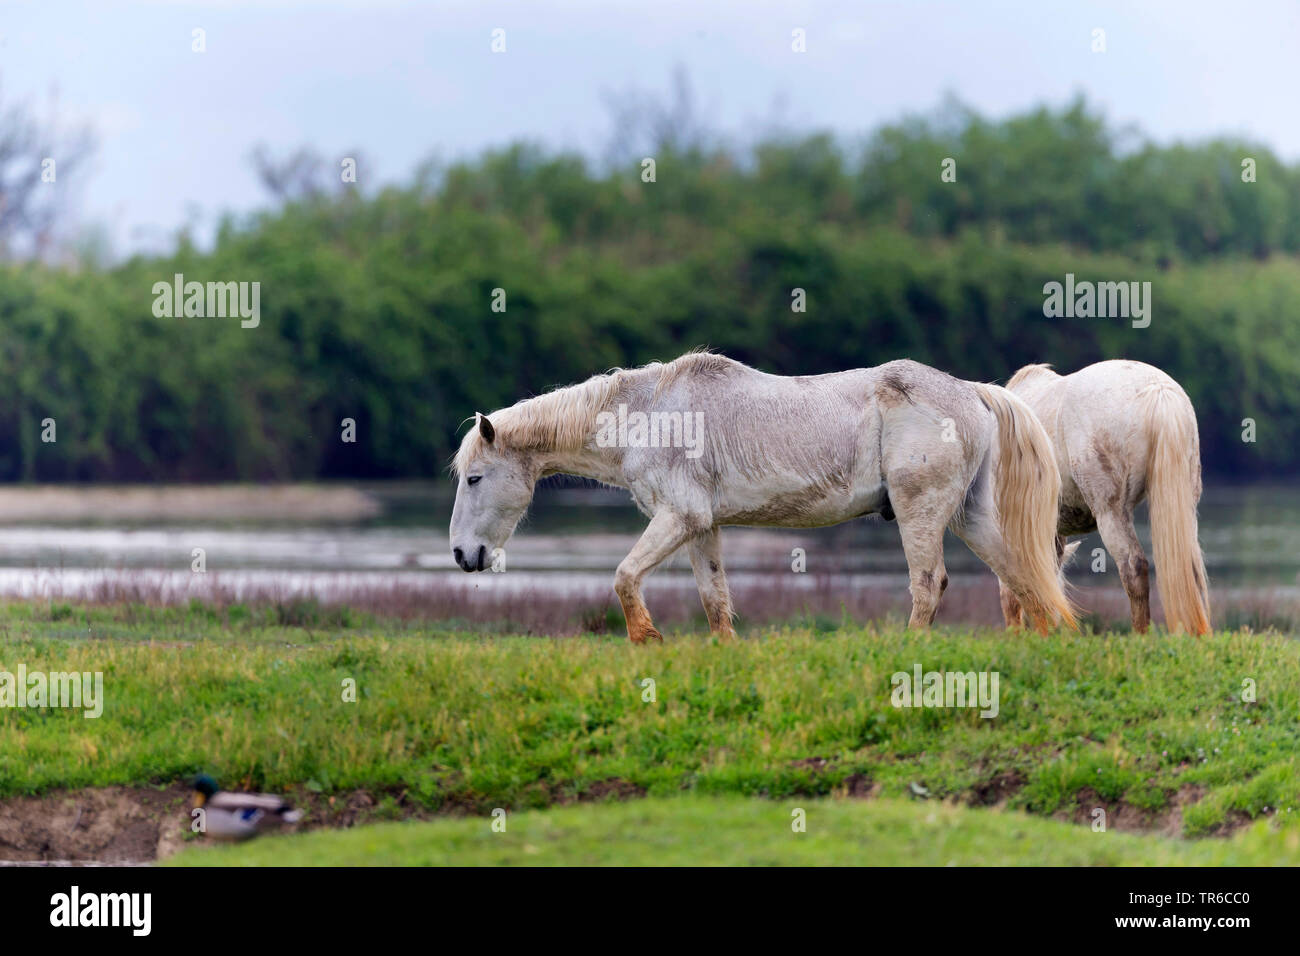 Cheval de Camargue (Equus caballus przewalskii. f), deux chevaux camargue le pâturage dans la zone humide, Espagne Banque D'Images